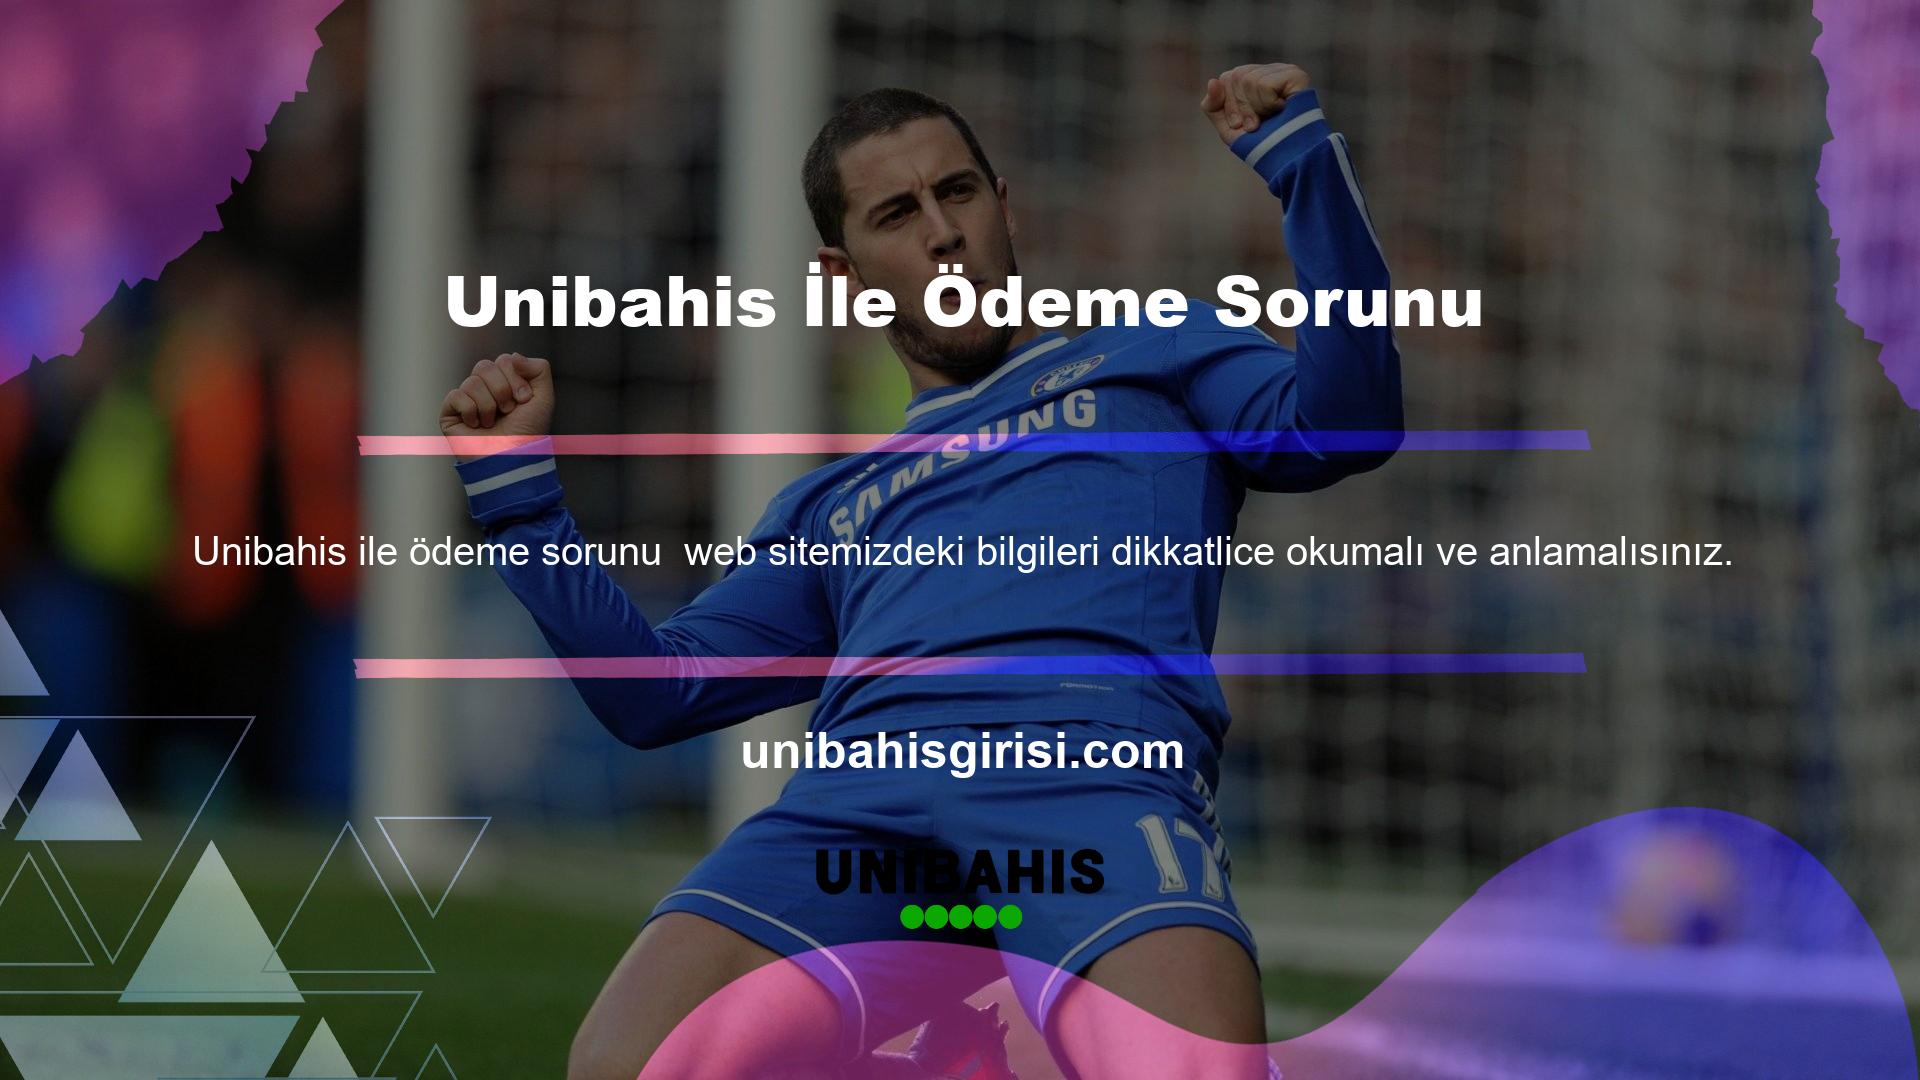 Unibahis ana sayfası, site kurallarına ilişkin tüm bilgileri içerir ve tüm İnternet kullanıcılarının kullanımına açıktır